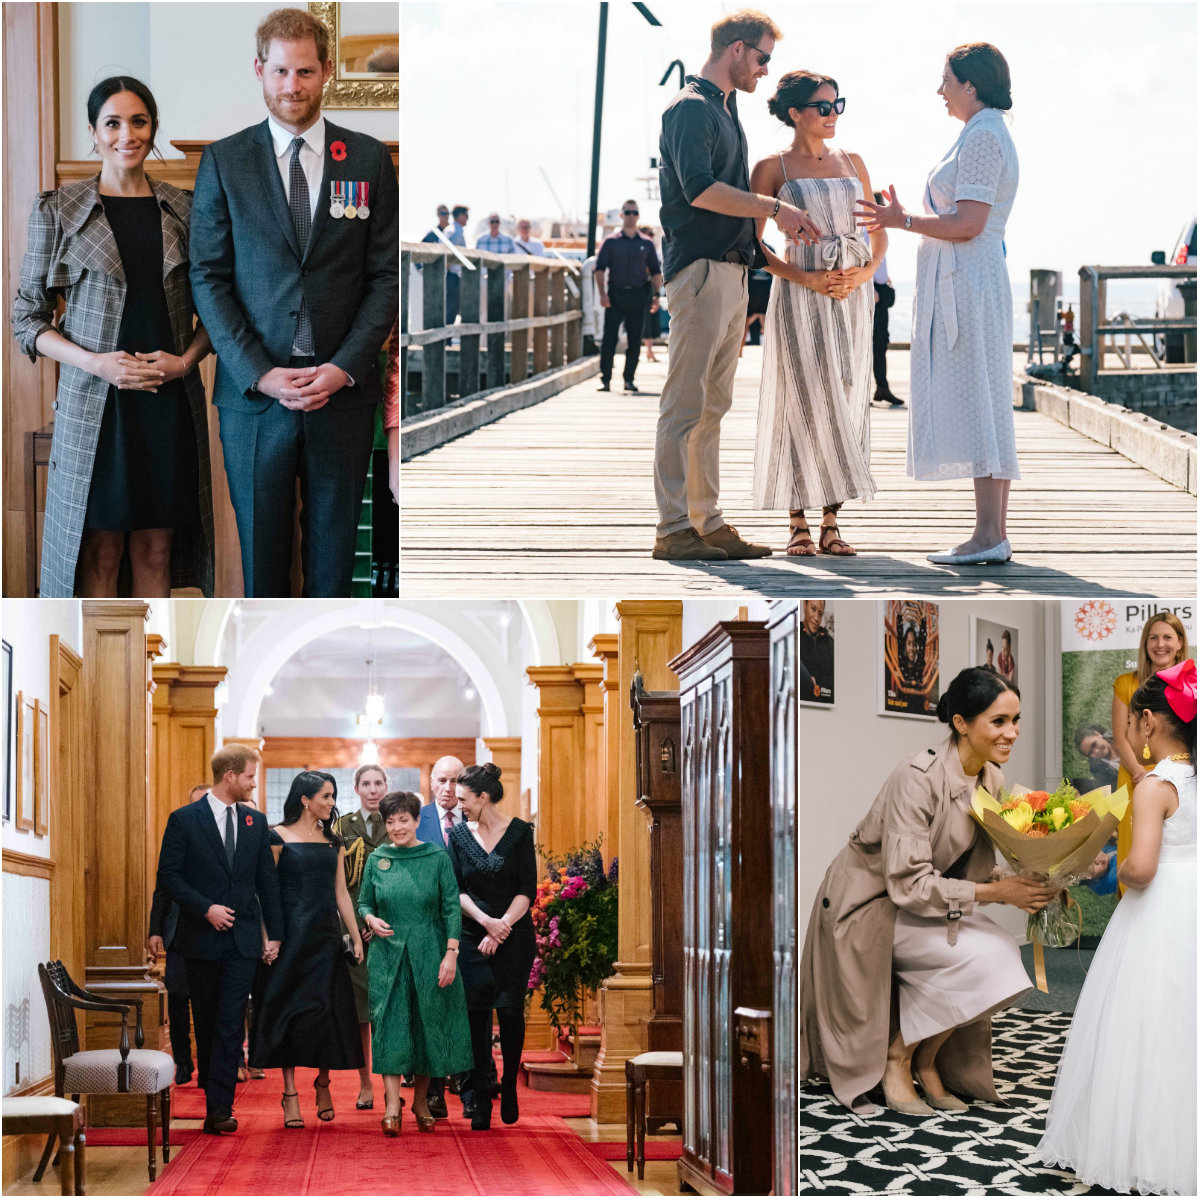 Μια συλλογή από τις εμφανίσεις της Meghan στην Αυστραλία - Photos: Kensington Palace Twitter